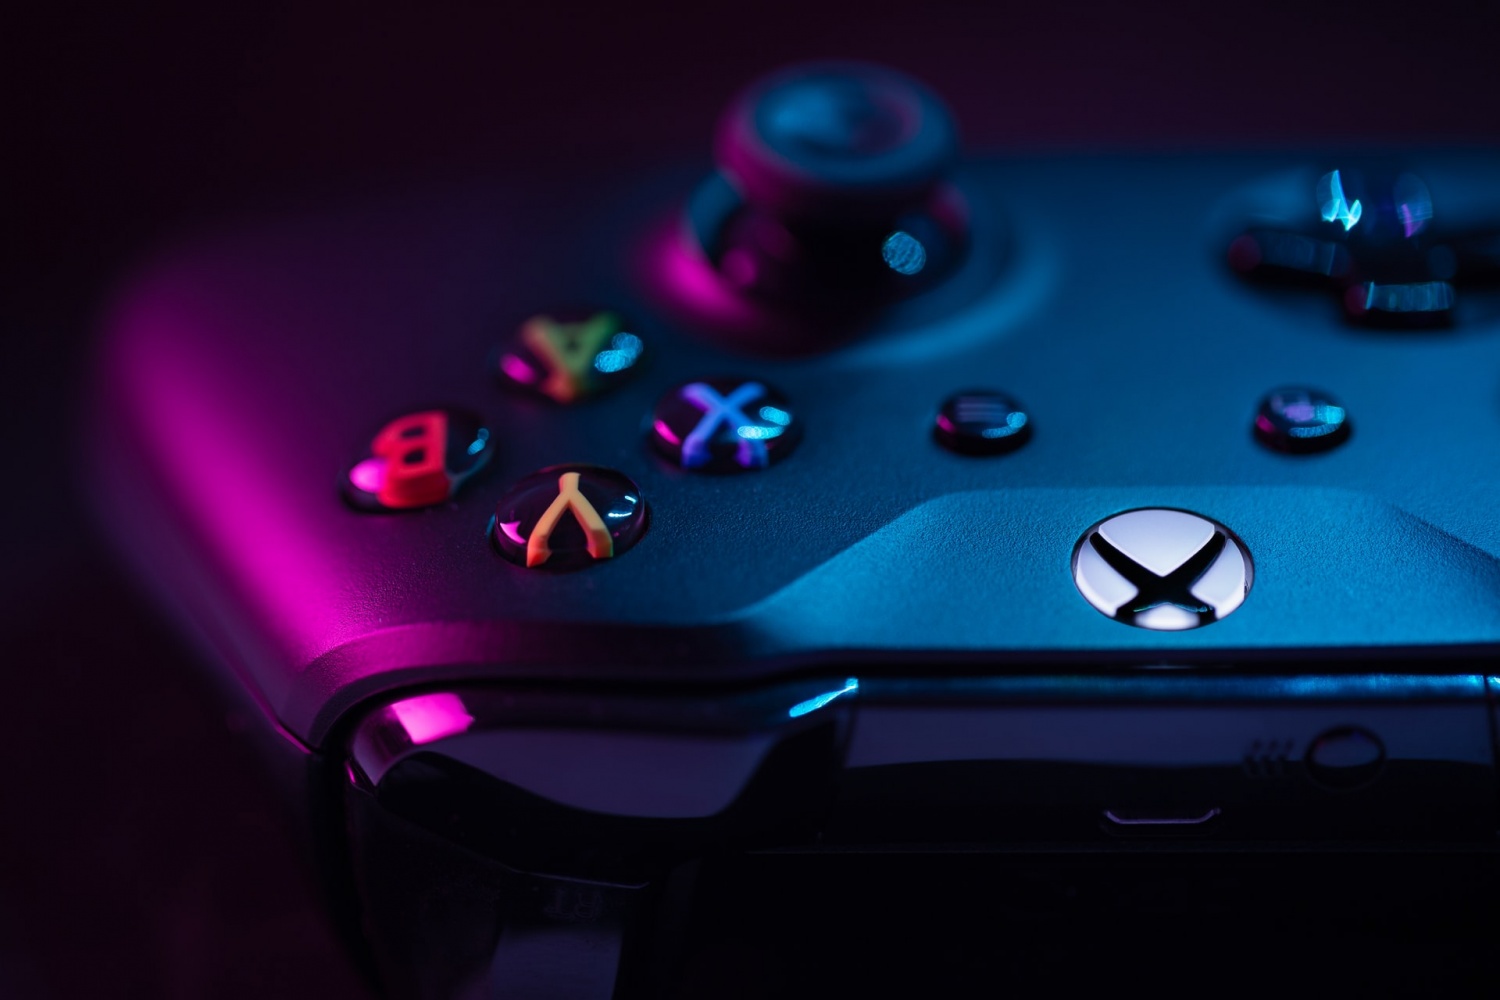 Đừng bỏ lỡ cơ hội tiếp cận với chiếc console mới nhất của Xbox. Series X Restock For July 18 đang được cập nhật mới nhất tại GameStop. Với đầy đủ các tính năng mới nhất của máy chơi game, đây là một dịp không thể bỏ qua cho những người đam mê chơi game.